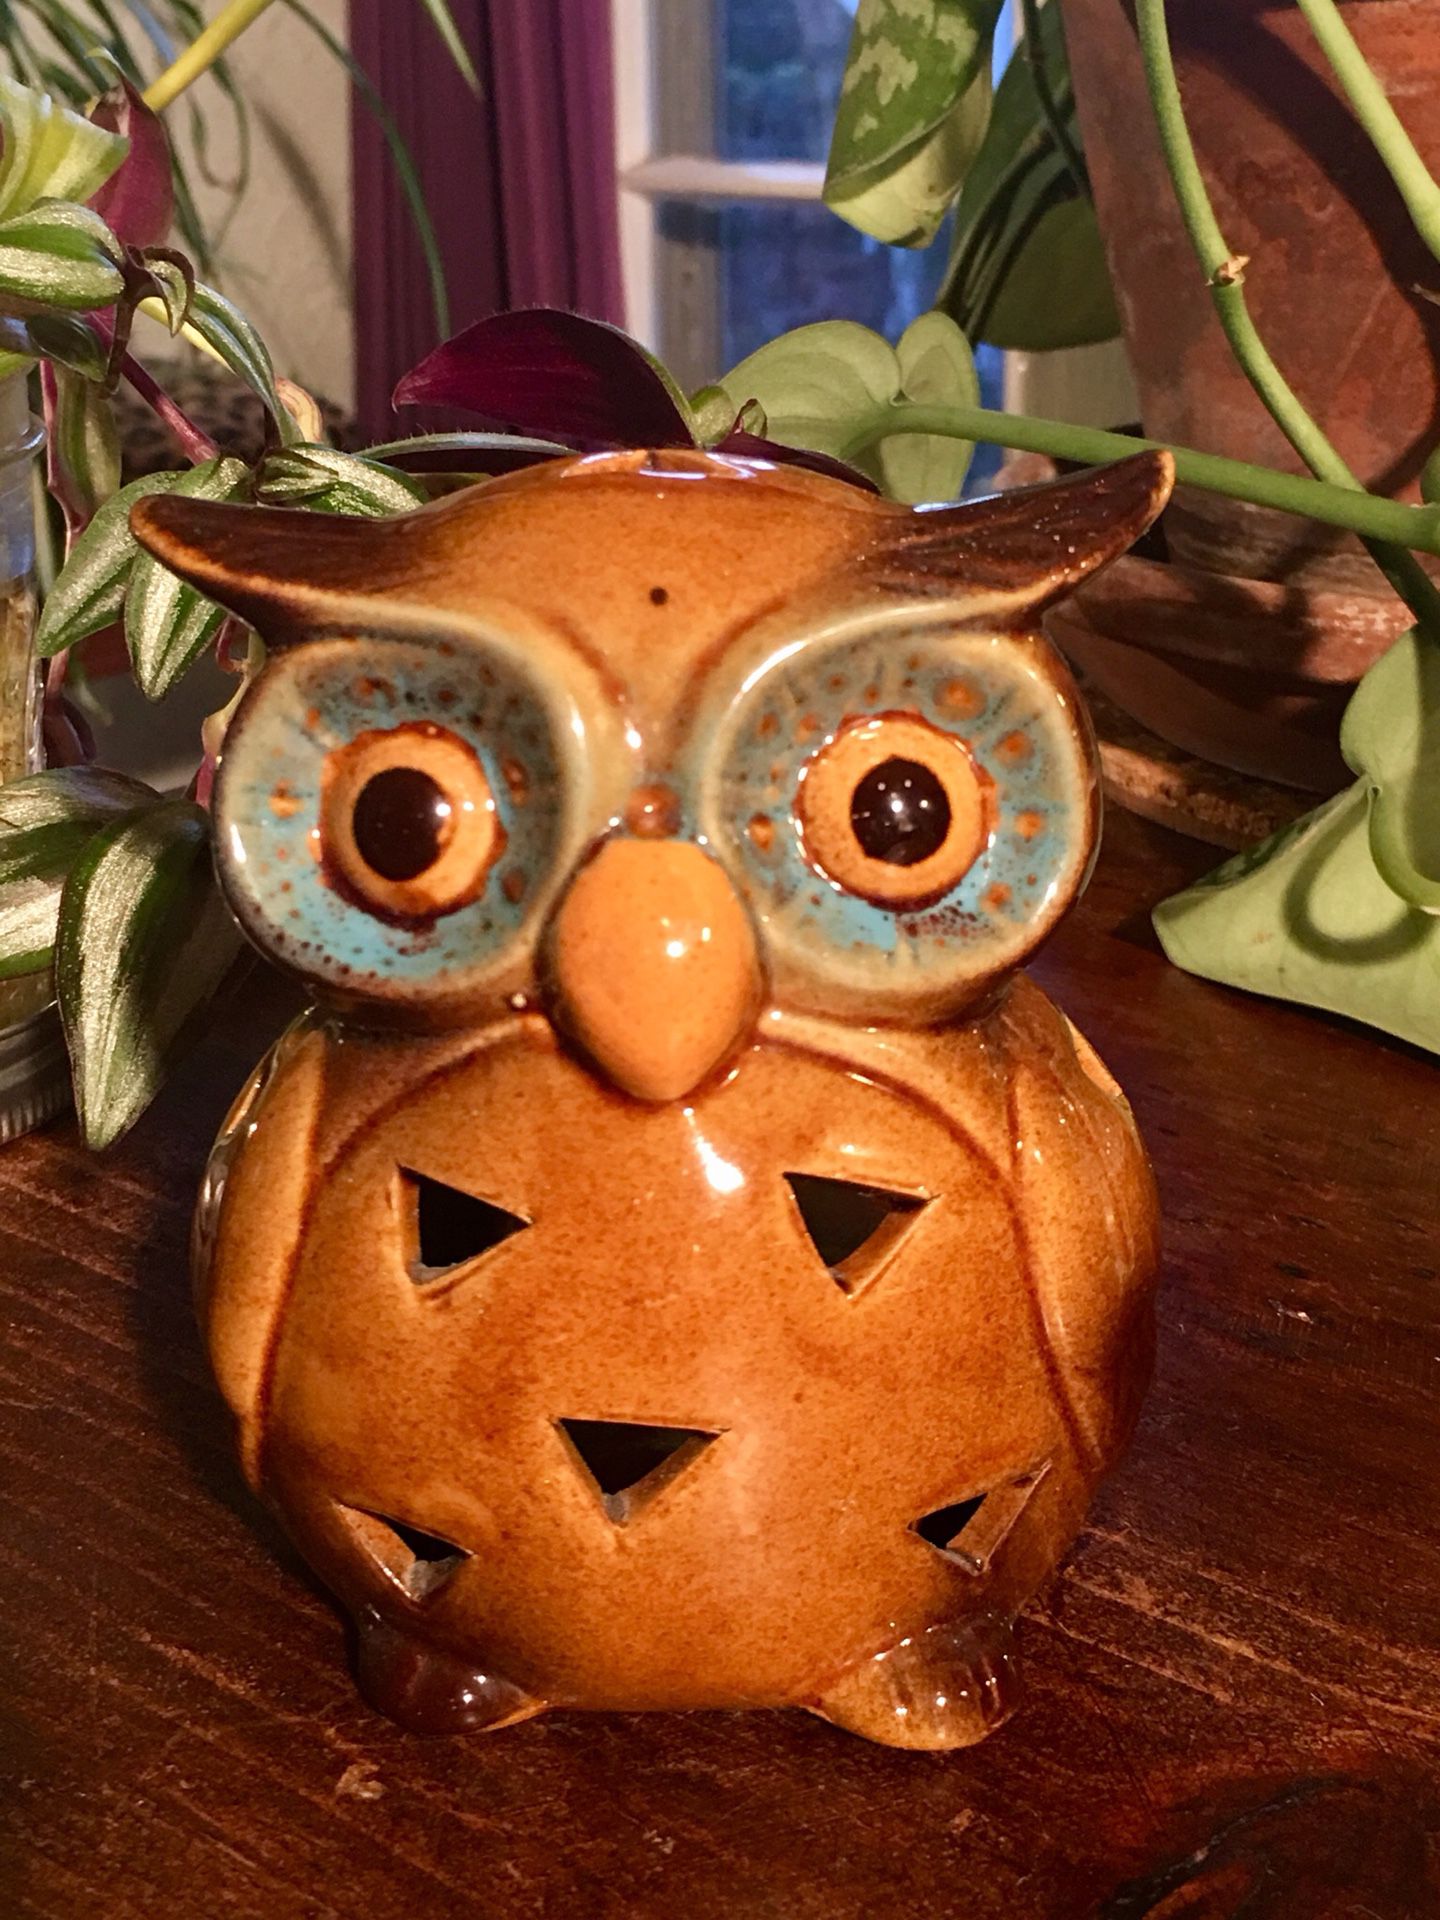 Vintage Ceramic Owl Candle Holder Incense Holder Owl Decor Boho Chic T Light Holder Home Decor - Pick Up LA or OC